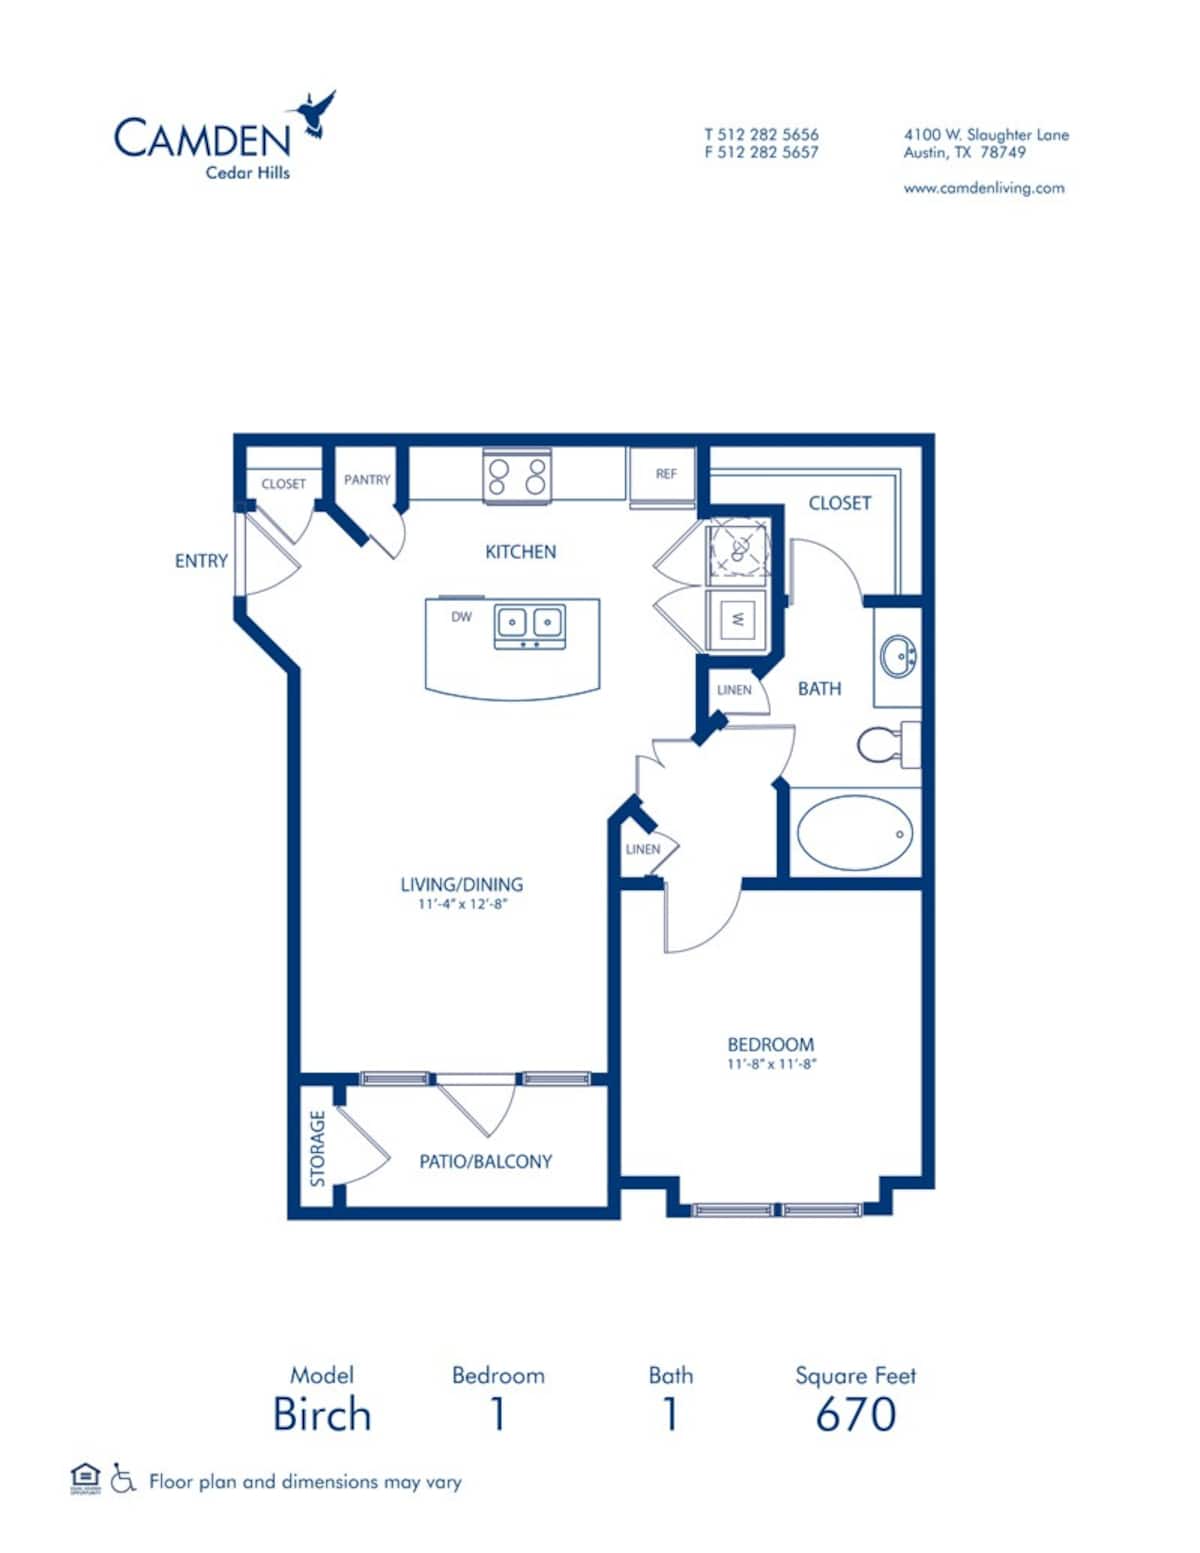 Floorplan diagram for Birch, showing 1 bedroom